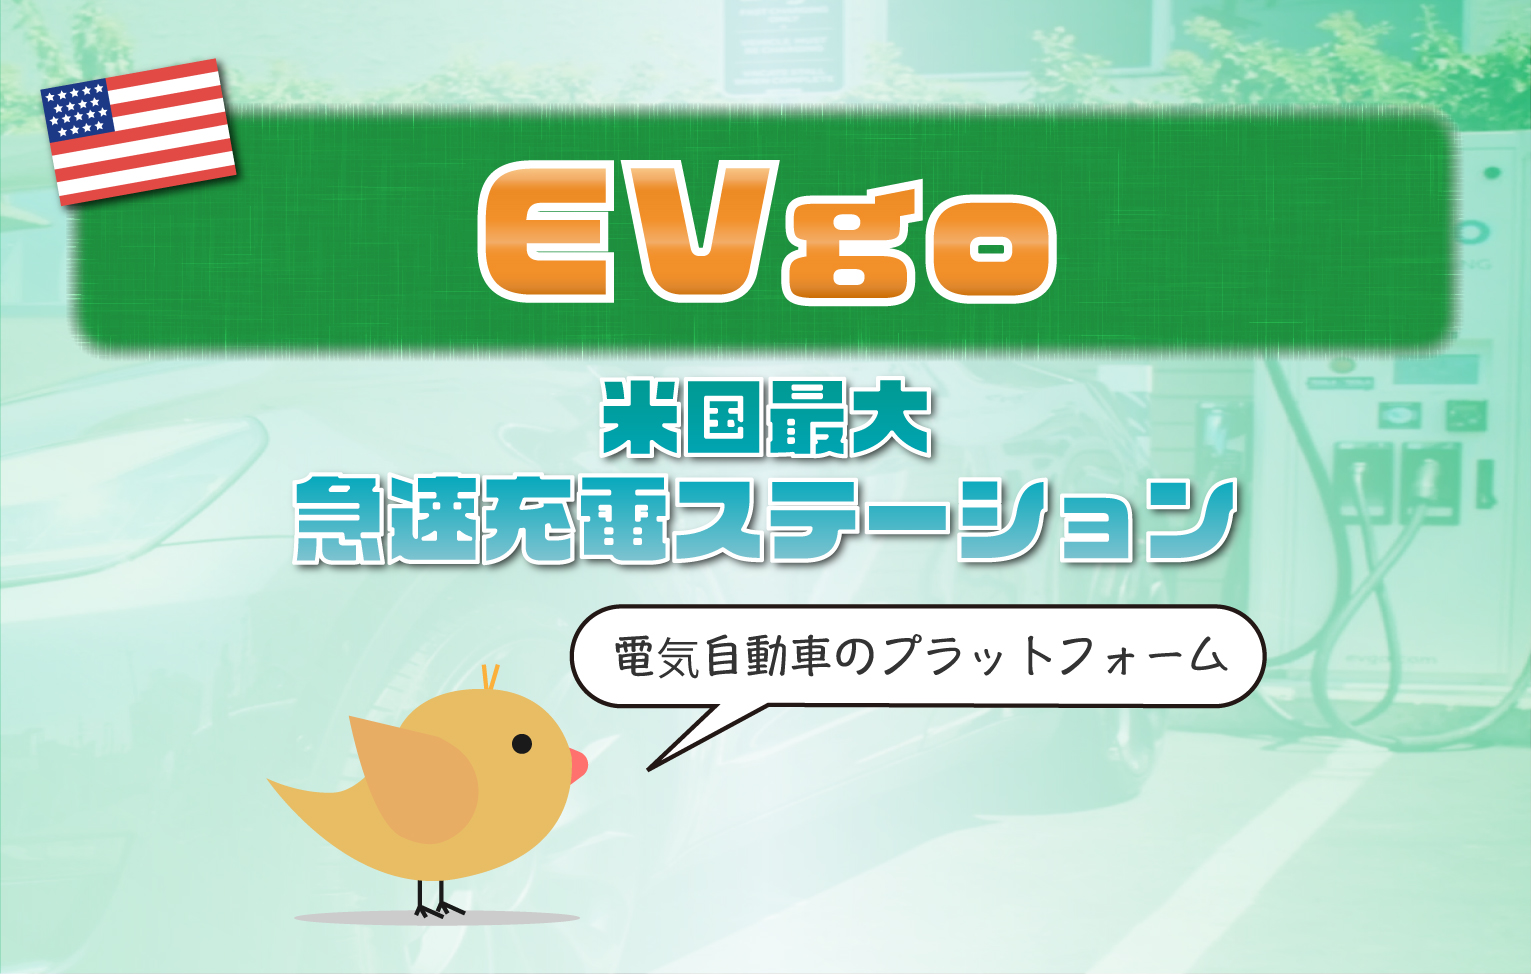 【米国株】EVgo (CLII)の投資情報 【EV急速充電ステーション】